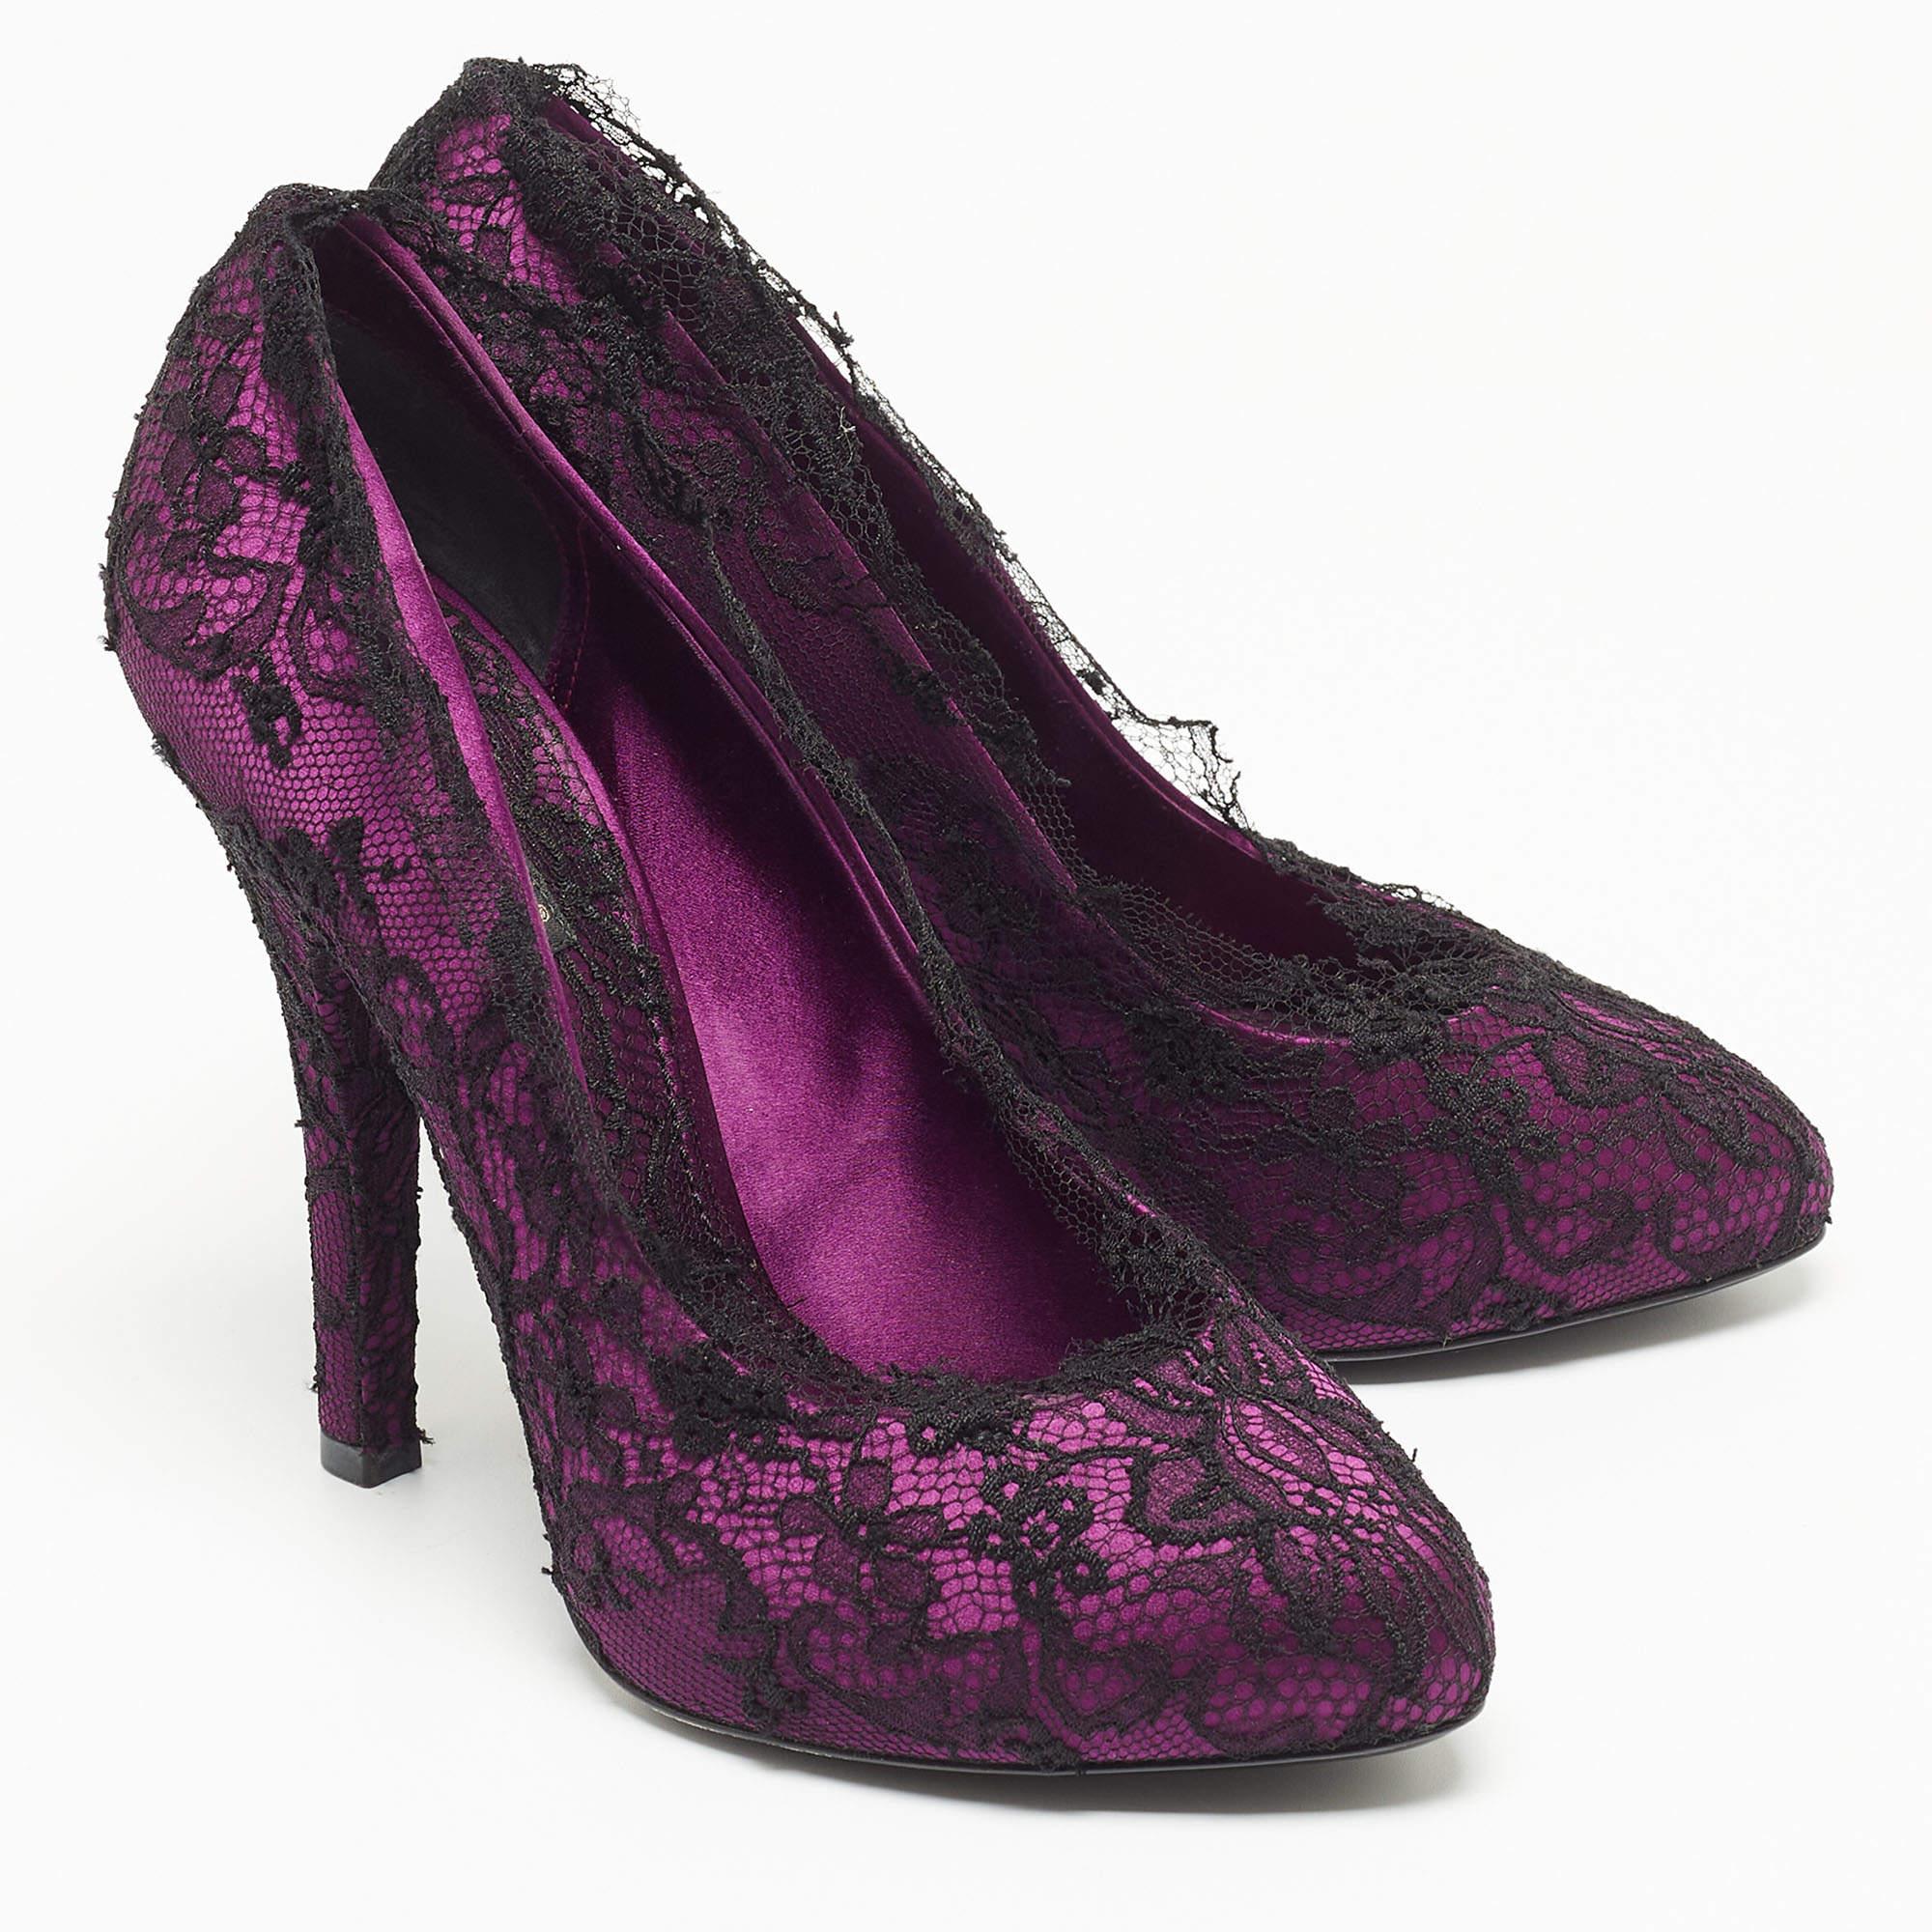 Dolce & Gabbana Black/Purple Floral Lace And Satin Platform Pumps Size 38 In Good Condition For Sale In Dubai, Al Qouz 2